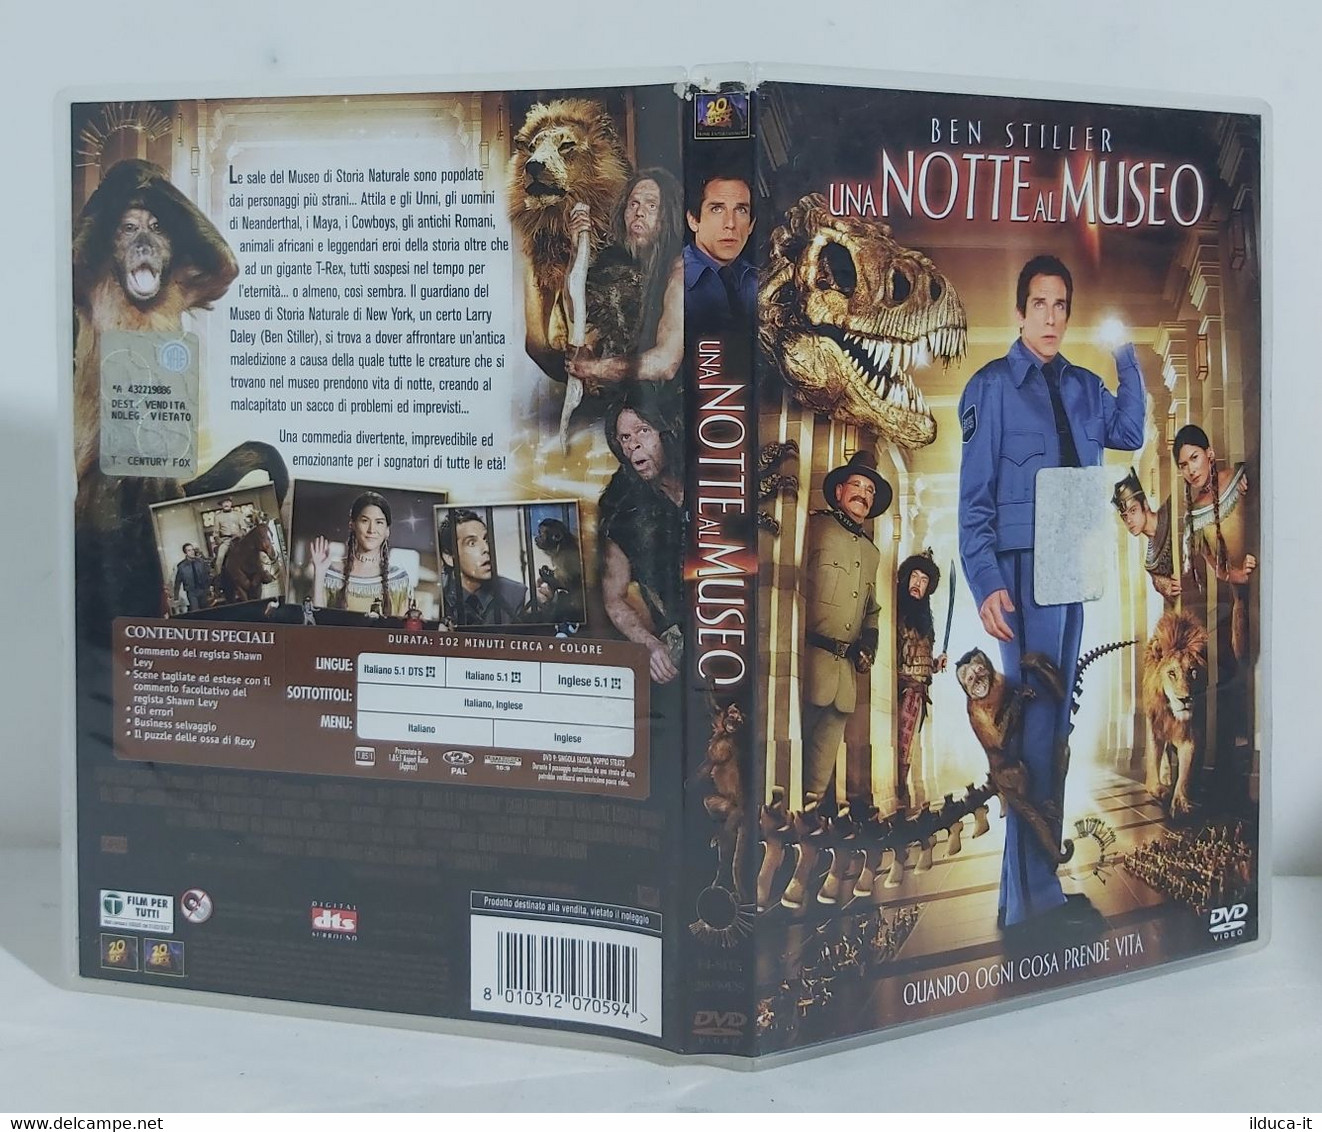 I102780 DVD - UNA NOTTE AL MUSEO (2006) - Ben Stiller - Fantastici